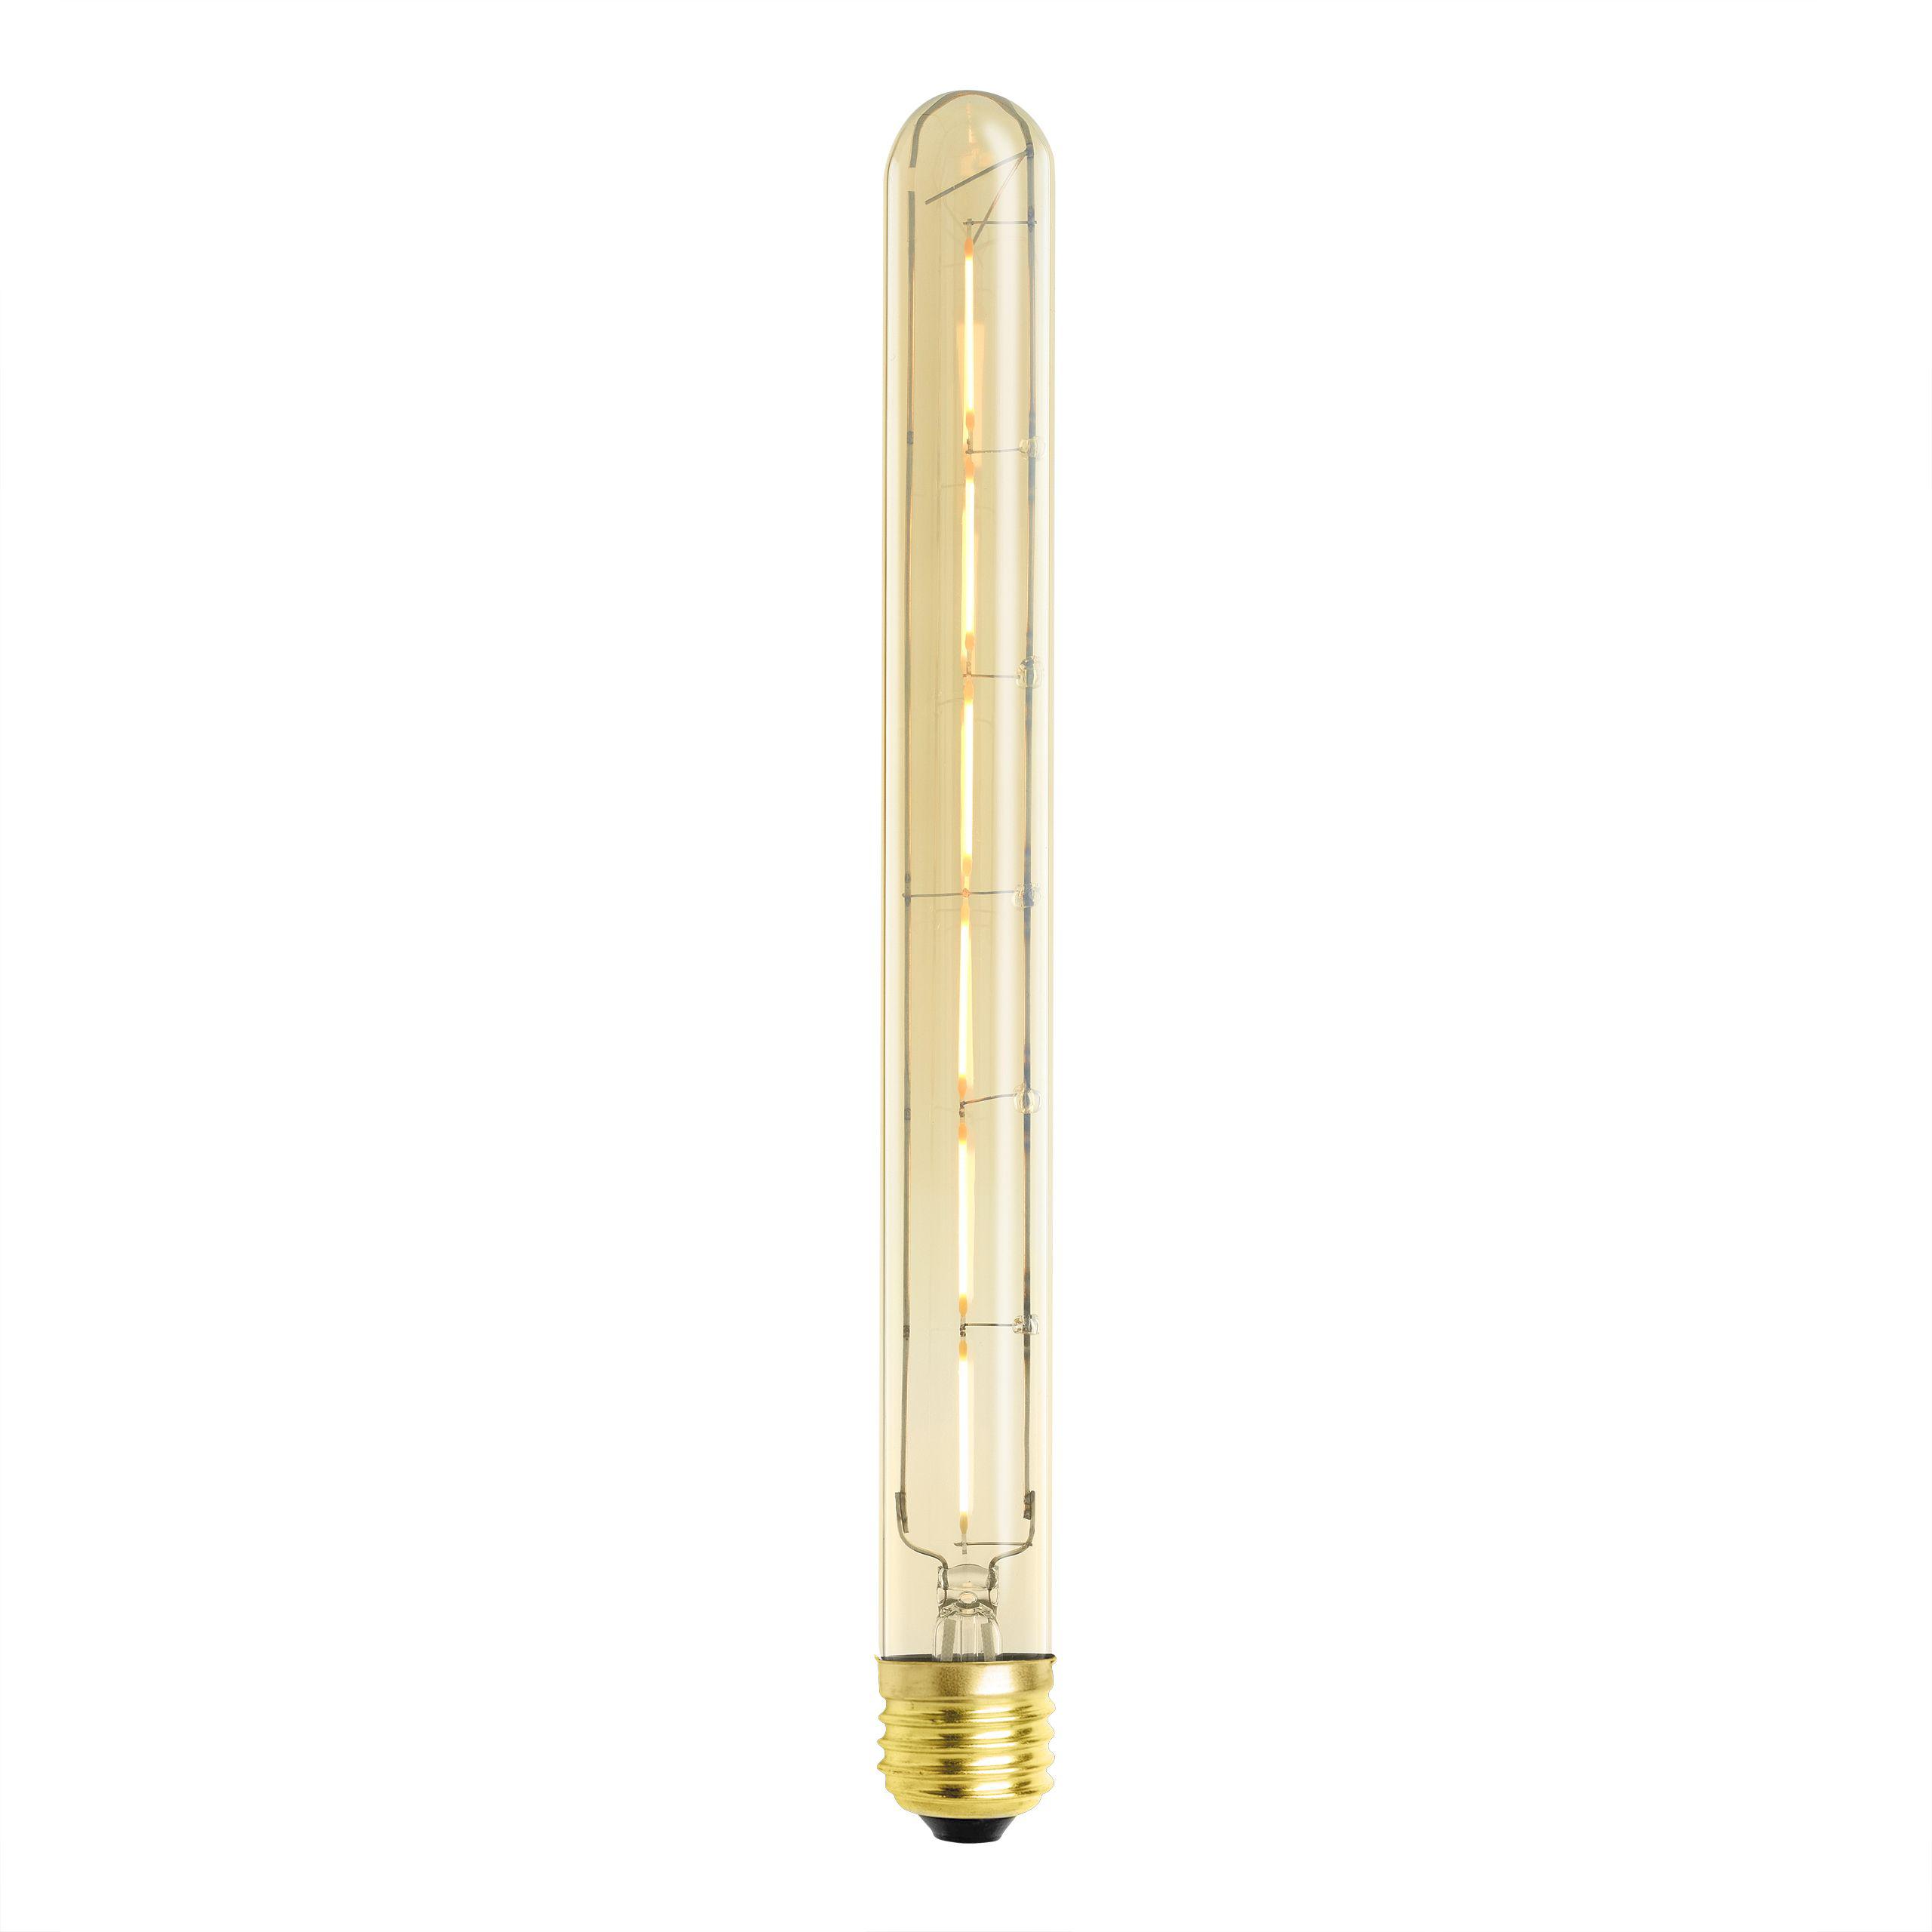 Купить Лампочка LED Bulb Tubular 6W E27 set of 4 в интернет-магазине roooms.ru